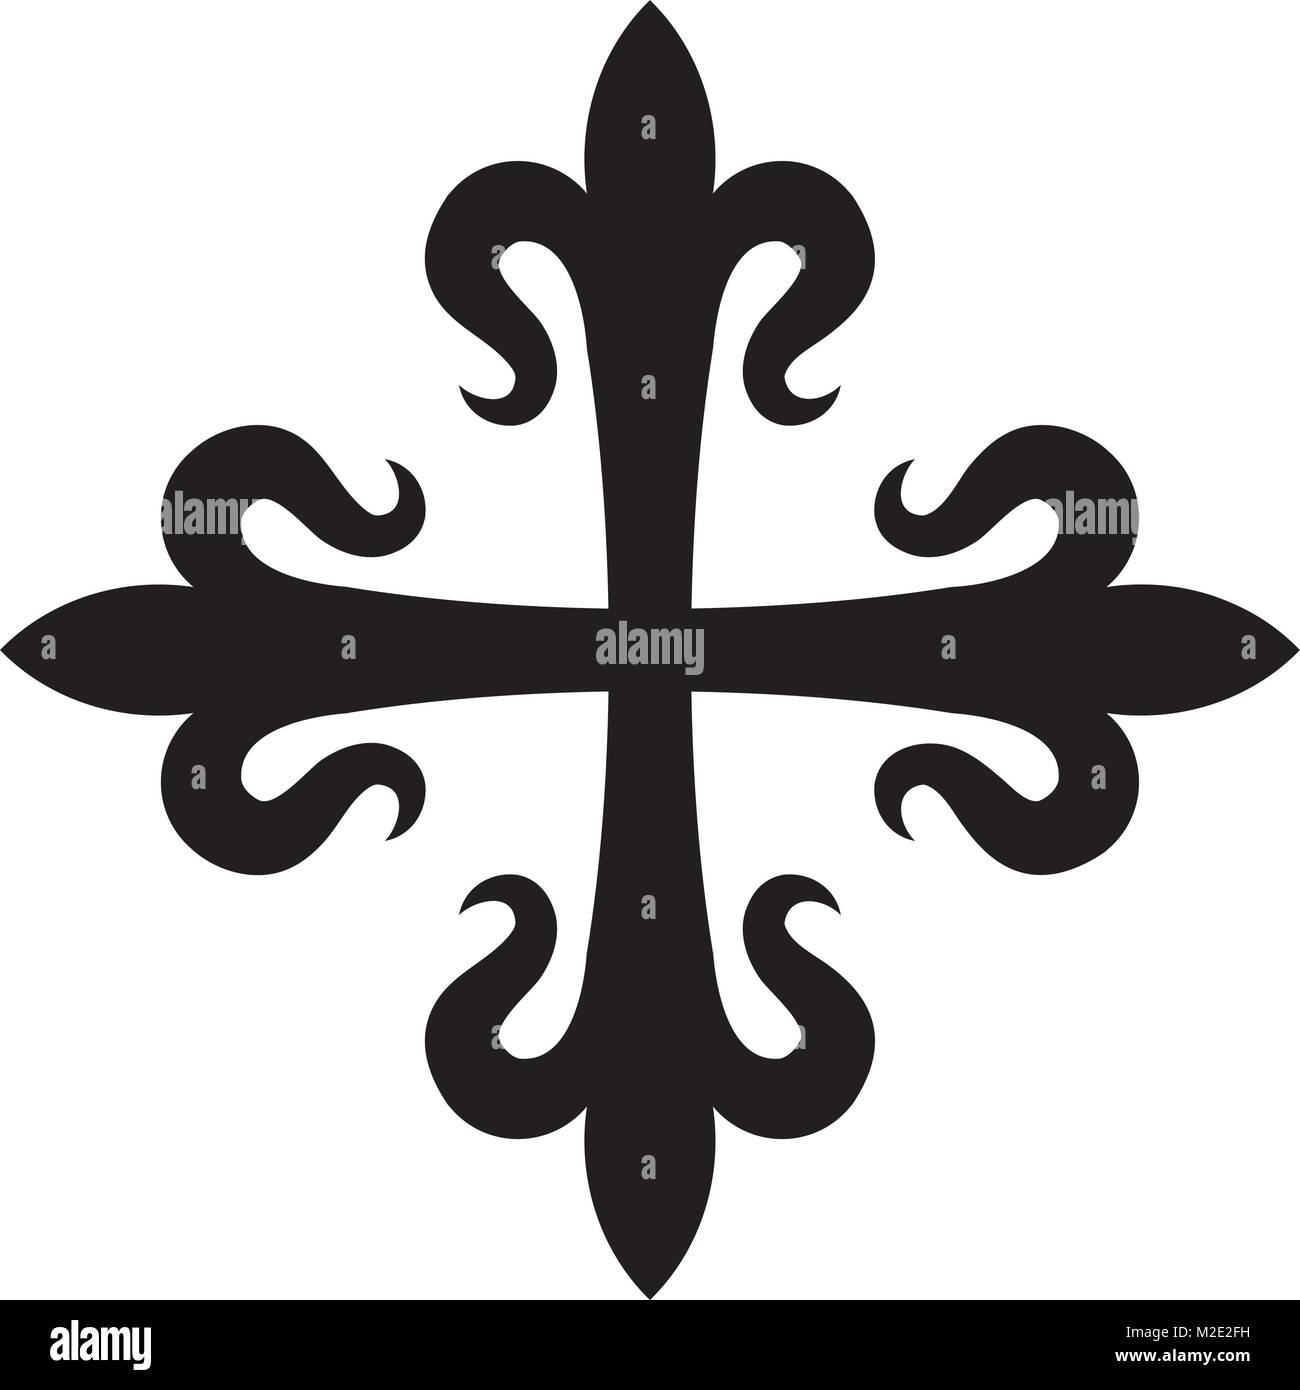 Croix fleurdelisée (cross of Lilies), Medieval heraldic cross. Stock Vector